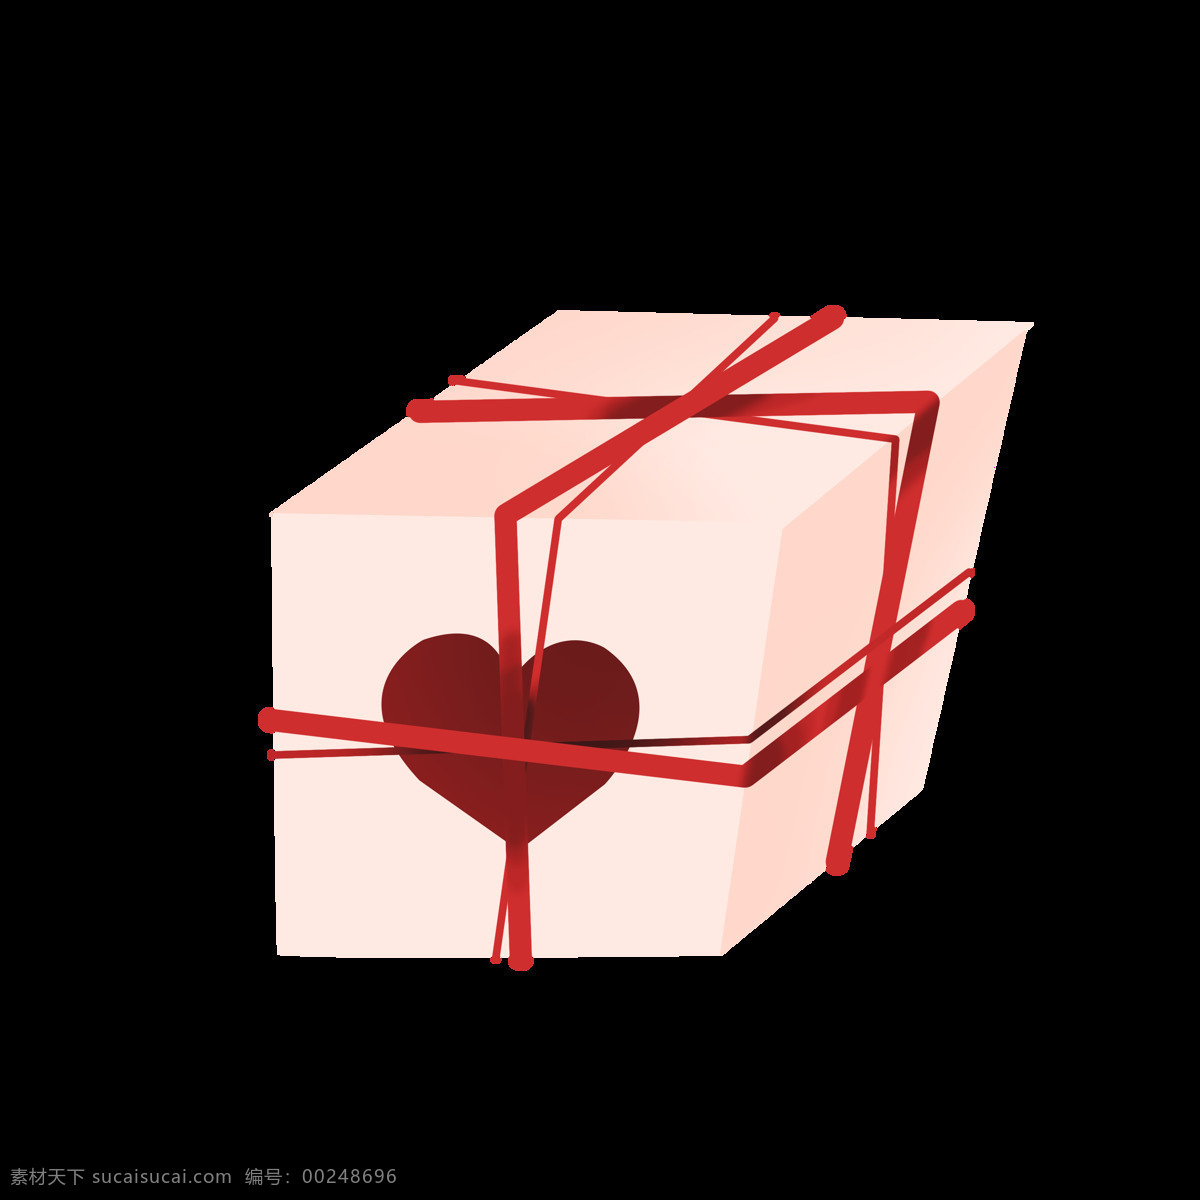 手绘 情人节 礼物 插画 红色的丝带 卡通插画 情人节礼物 情人节礼盒 红色的心形